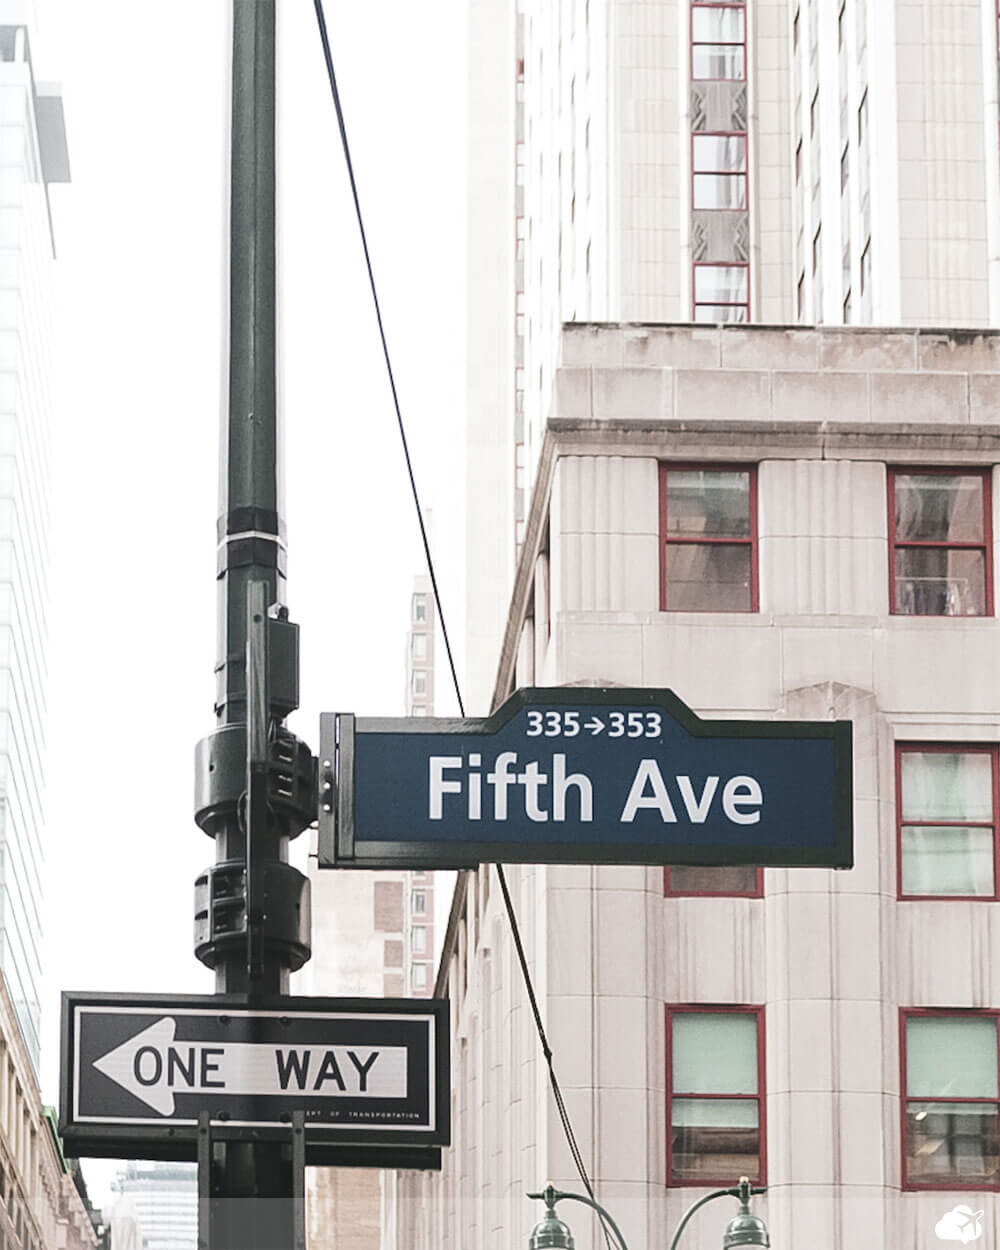 placa quinta avenida nova york